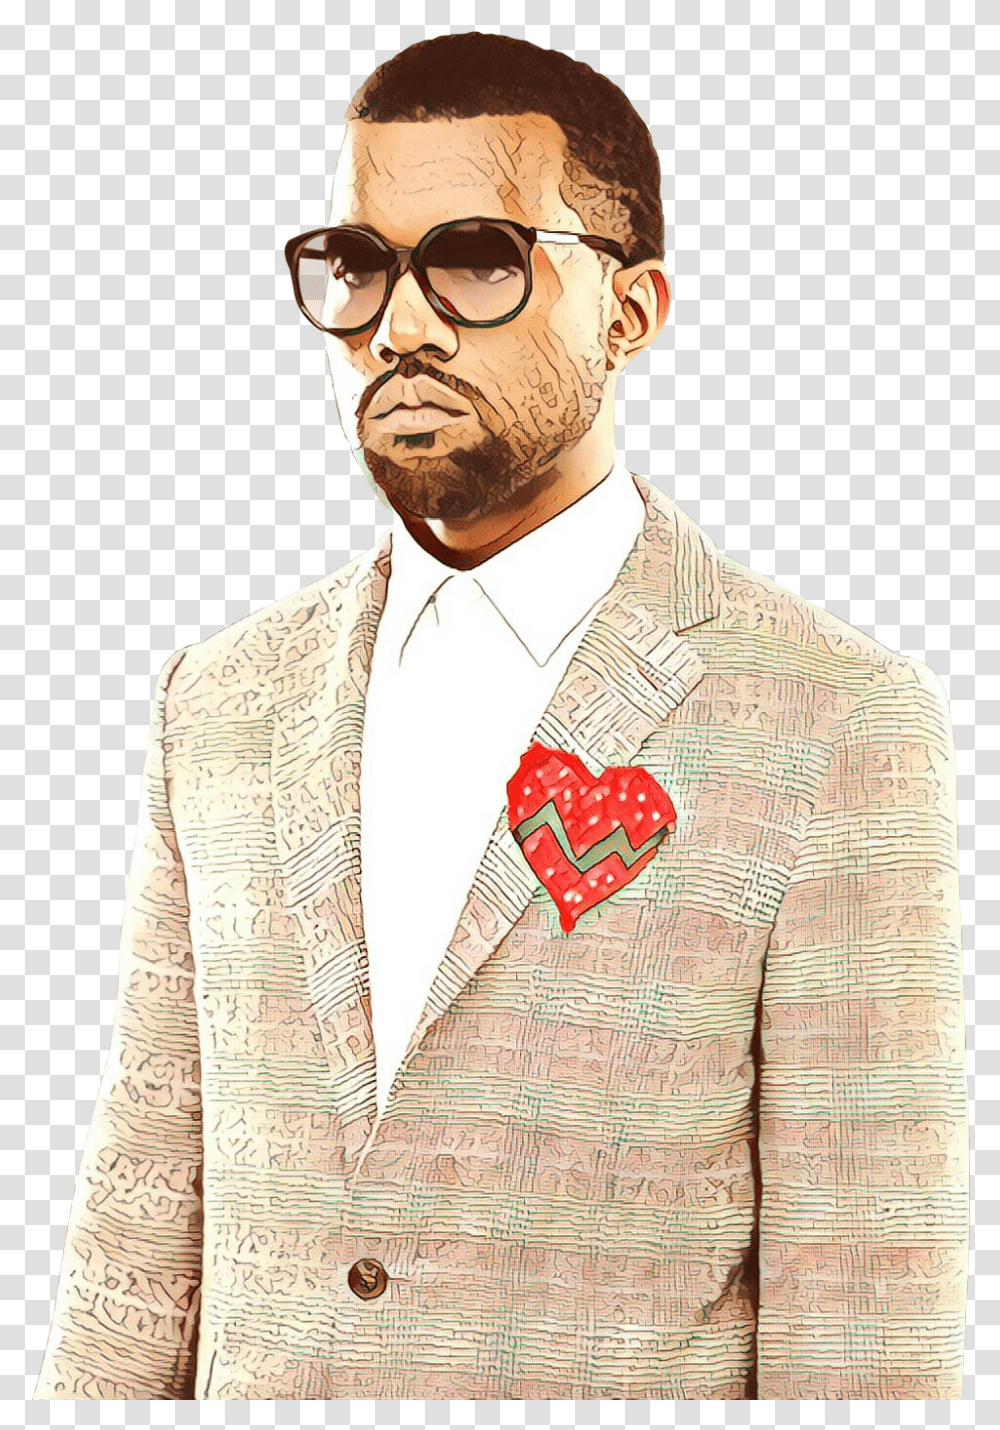 Kanye West 808s Amp Heartbreak Hip Hop Music Moustache, Person, Blazer, Jacket Transparent Png